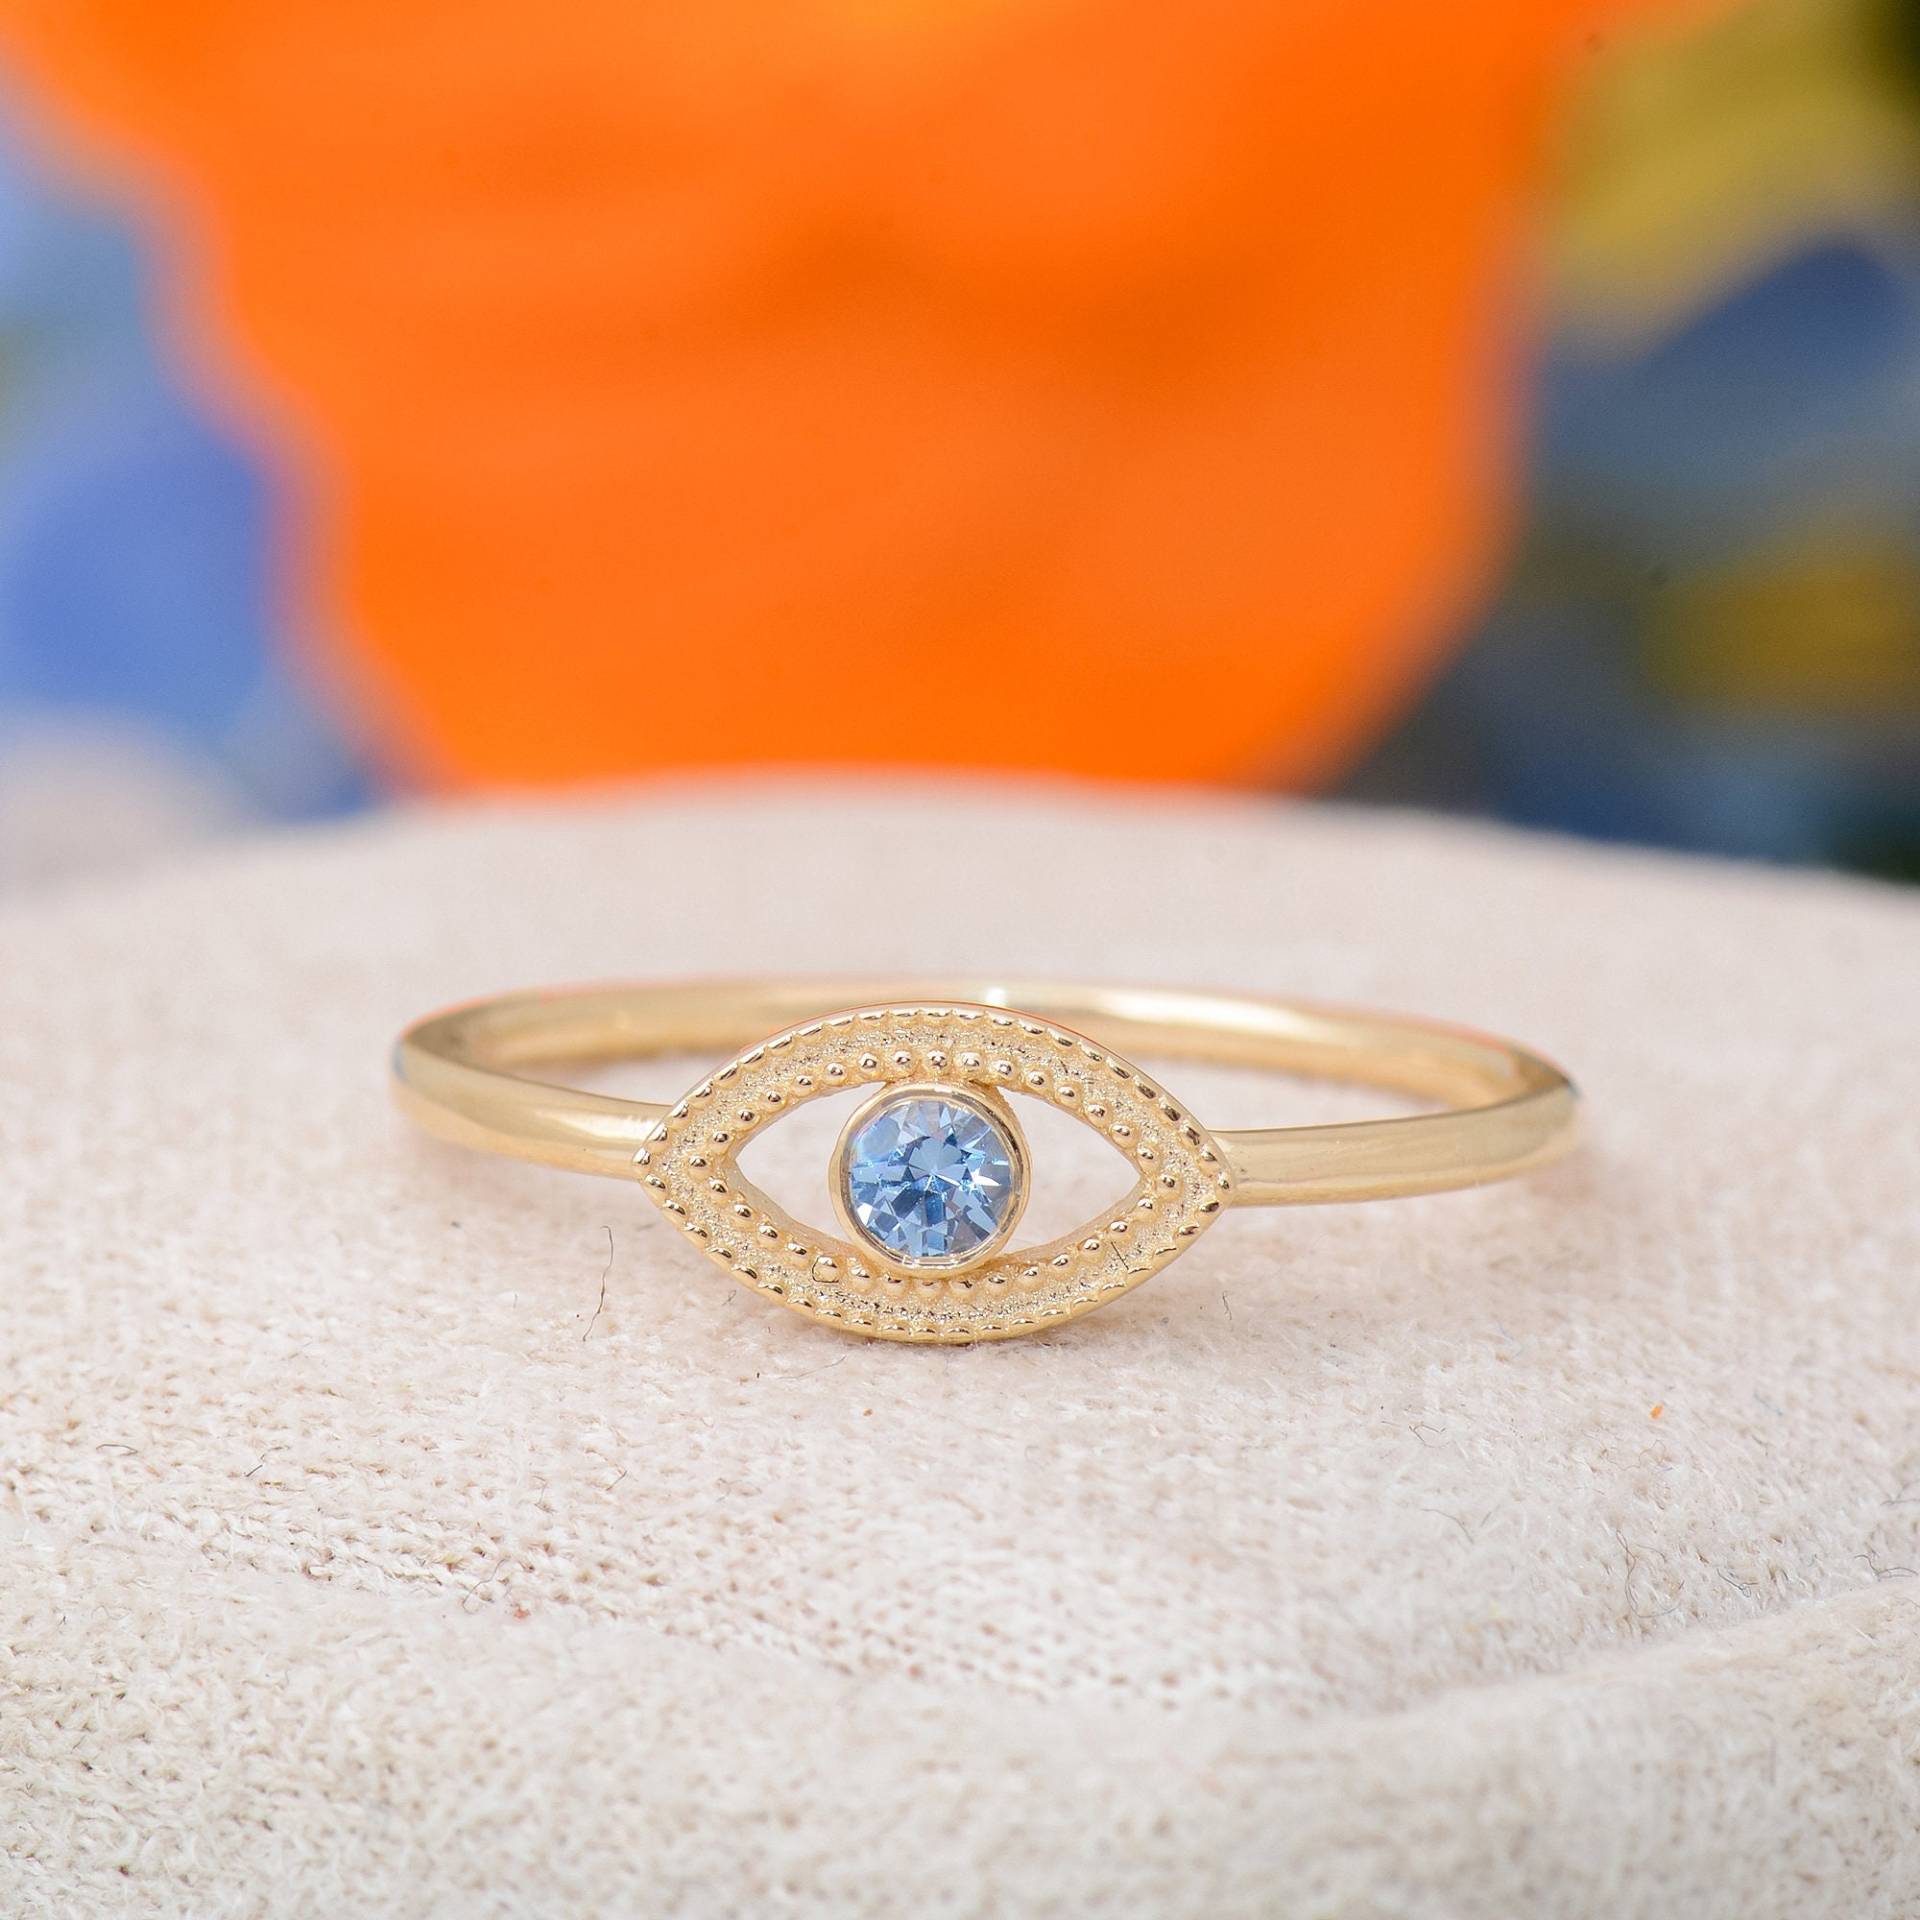 Handgemachter Gold Ring Mit Bösem Auge, Zierlicher Blautopas Böser Blick Ring, Teufel Auge Valentinstag Geschenk von TilyaJewelry